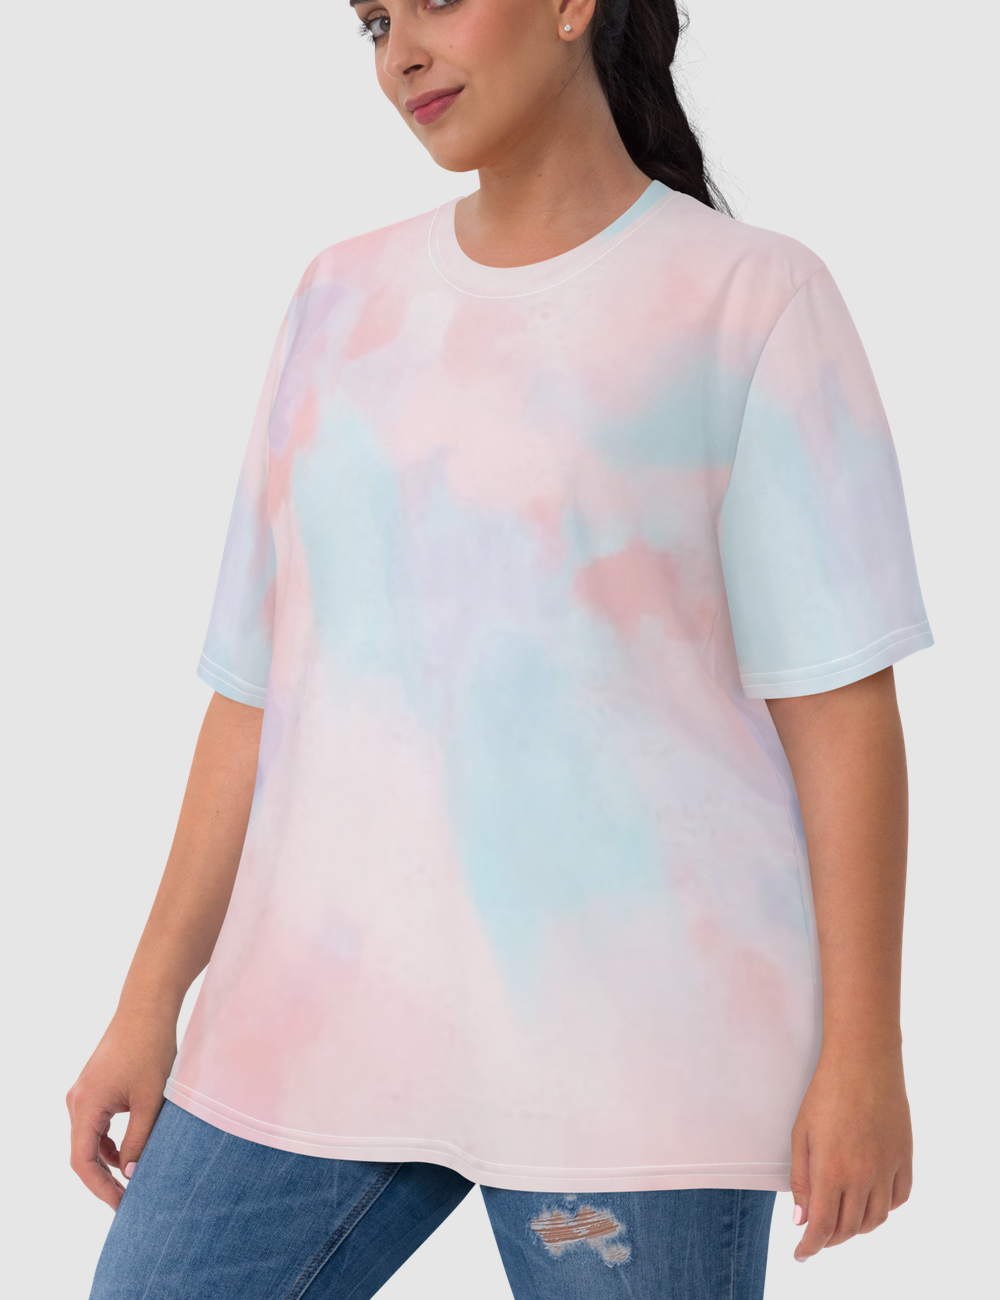 Abstract White Tie-Dye Women's T-Shirt OniTakai